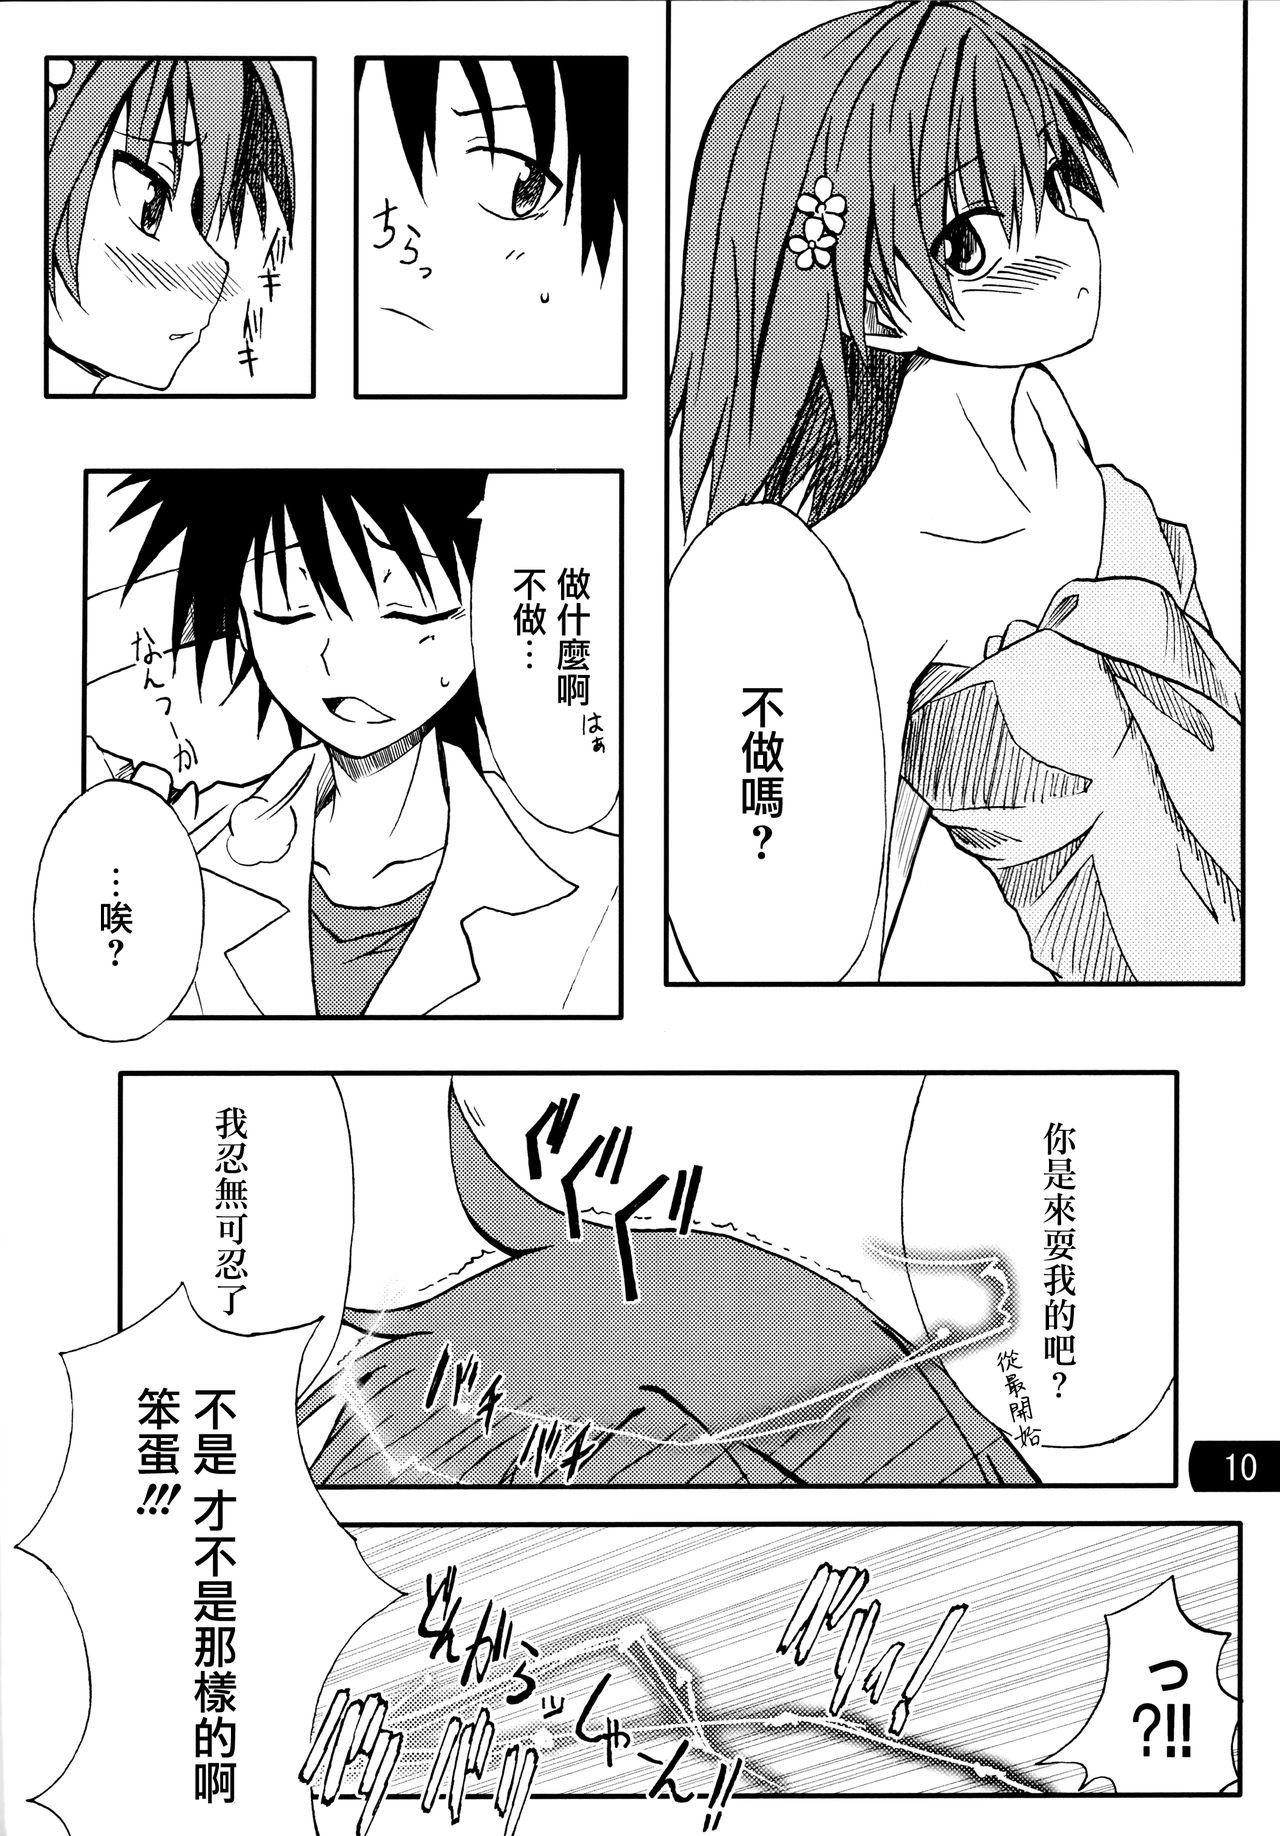 Cameltoe Toaru mousou no chou denji hon 02 - Toaru kagaku no railgun Rough Sex - Page 9